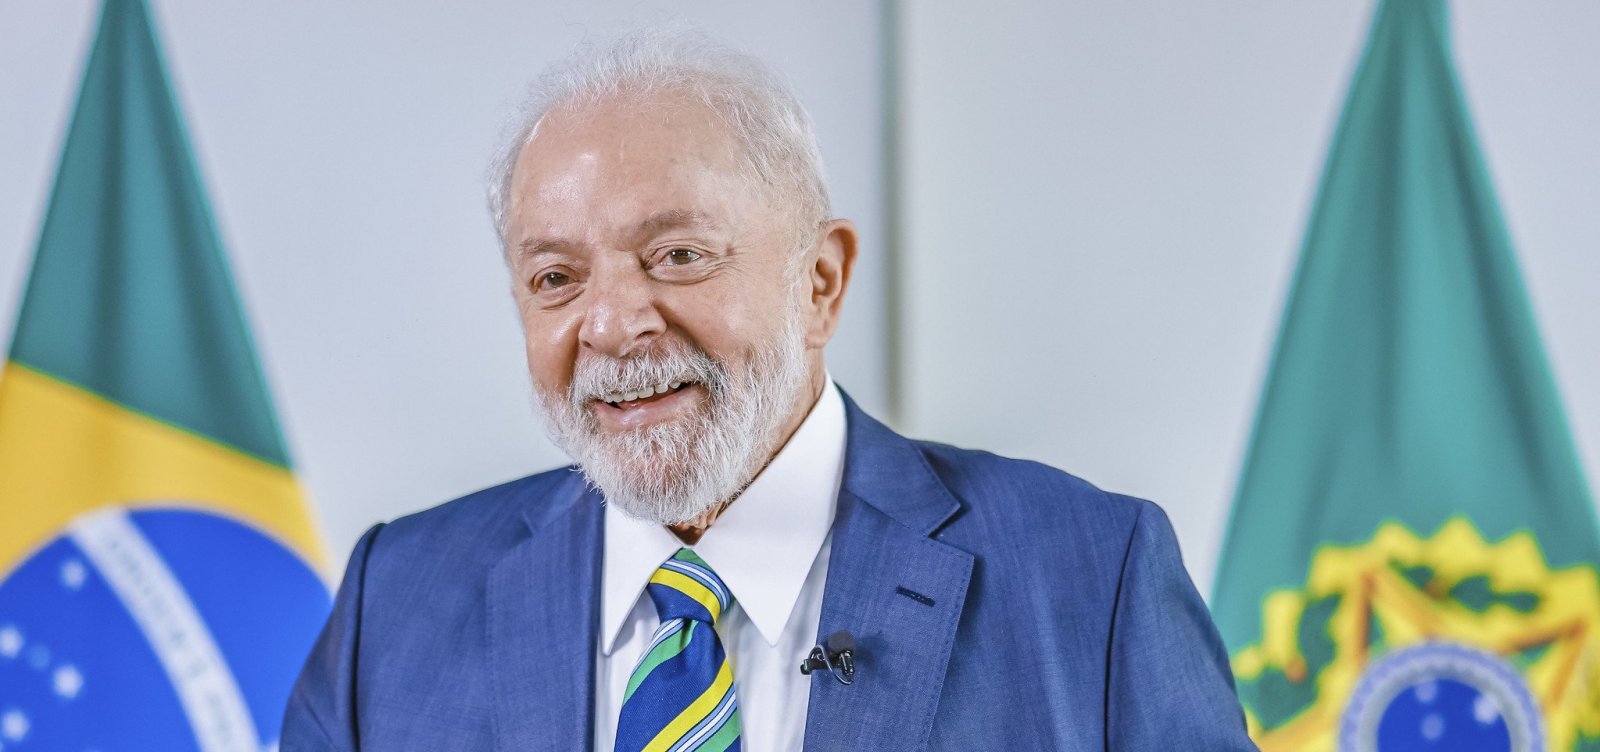 Lula retoma viagens internacionais com agendas no Oriente Médio e Alemanha nesta segunda